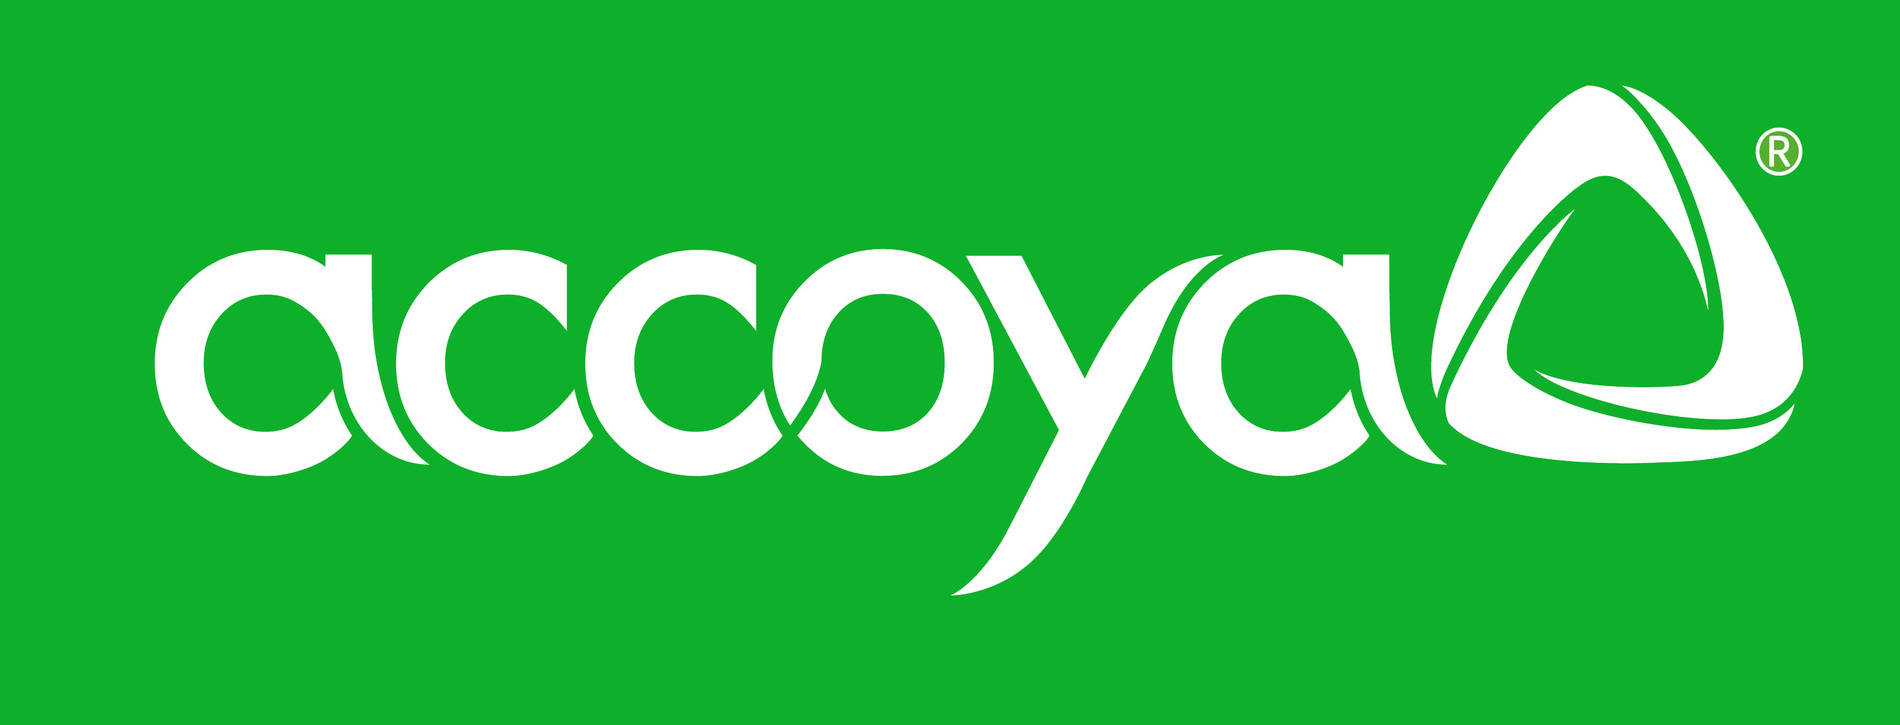 Accoya-Logo-300-RGB-6